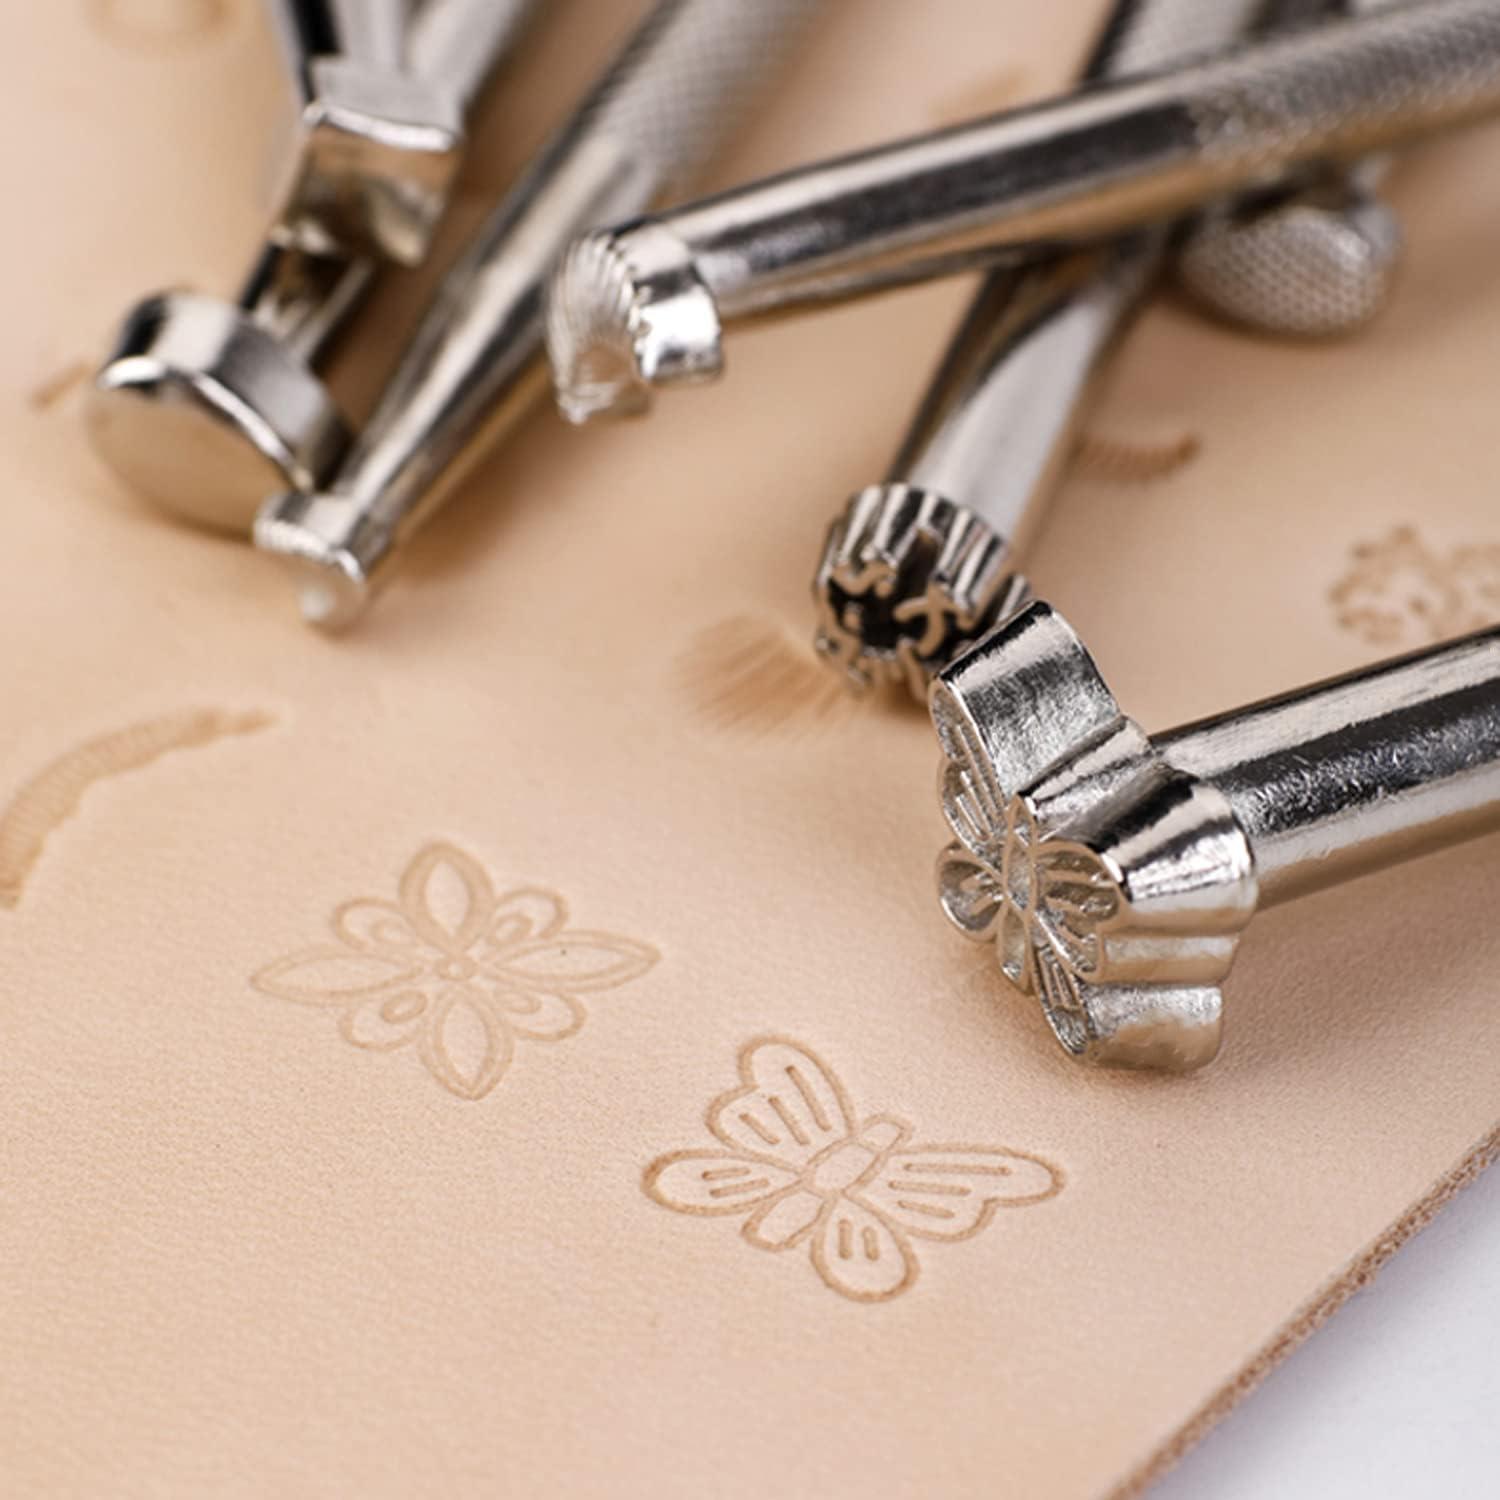 Premium 18-Piece Leather Craft Tools Kit - Stitching, Stamping, Saddle  Making